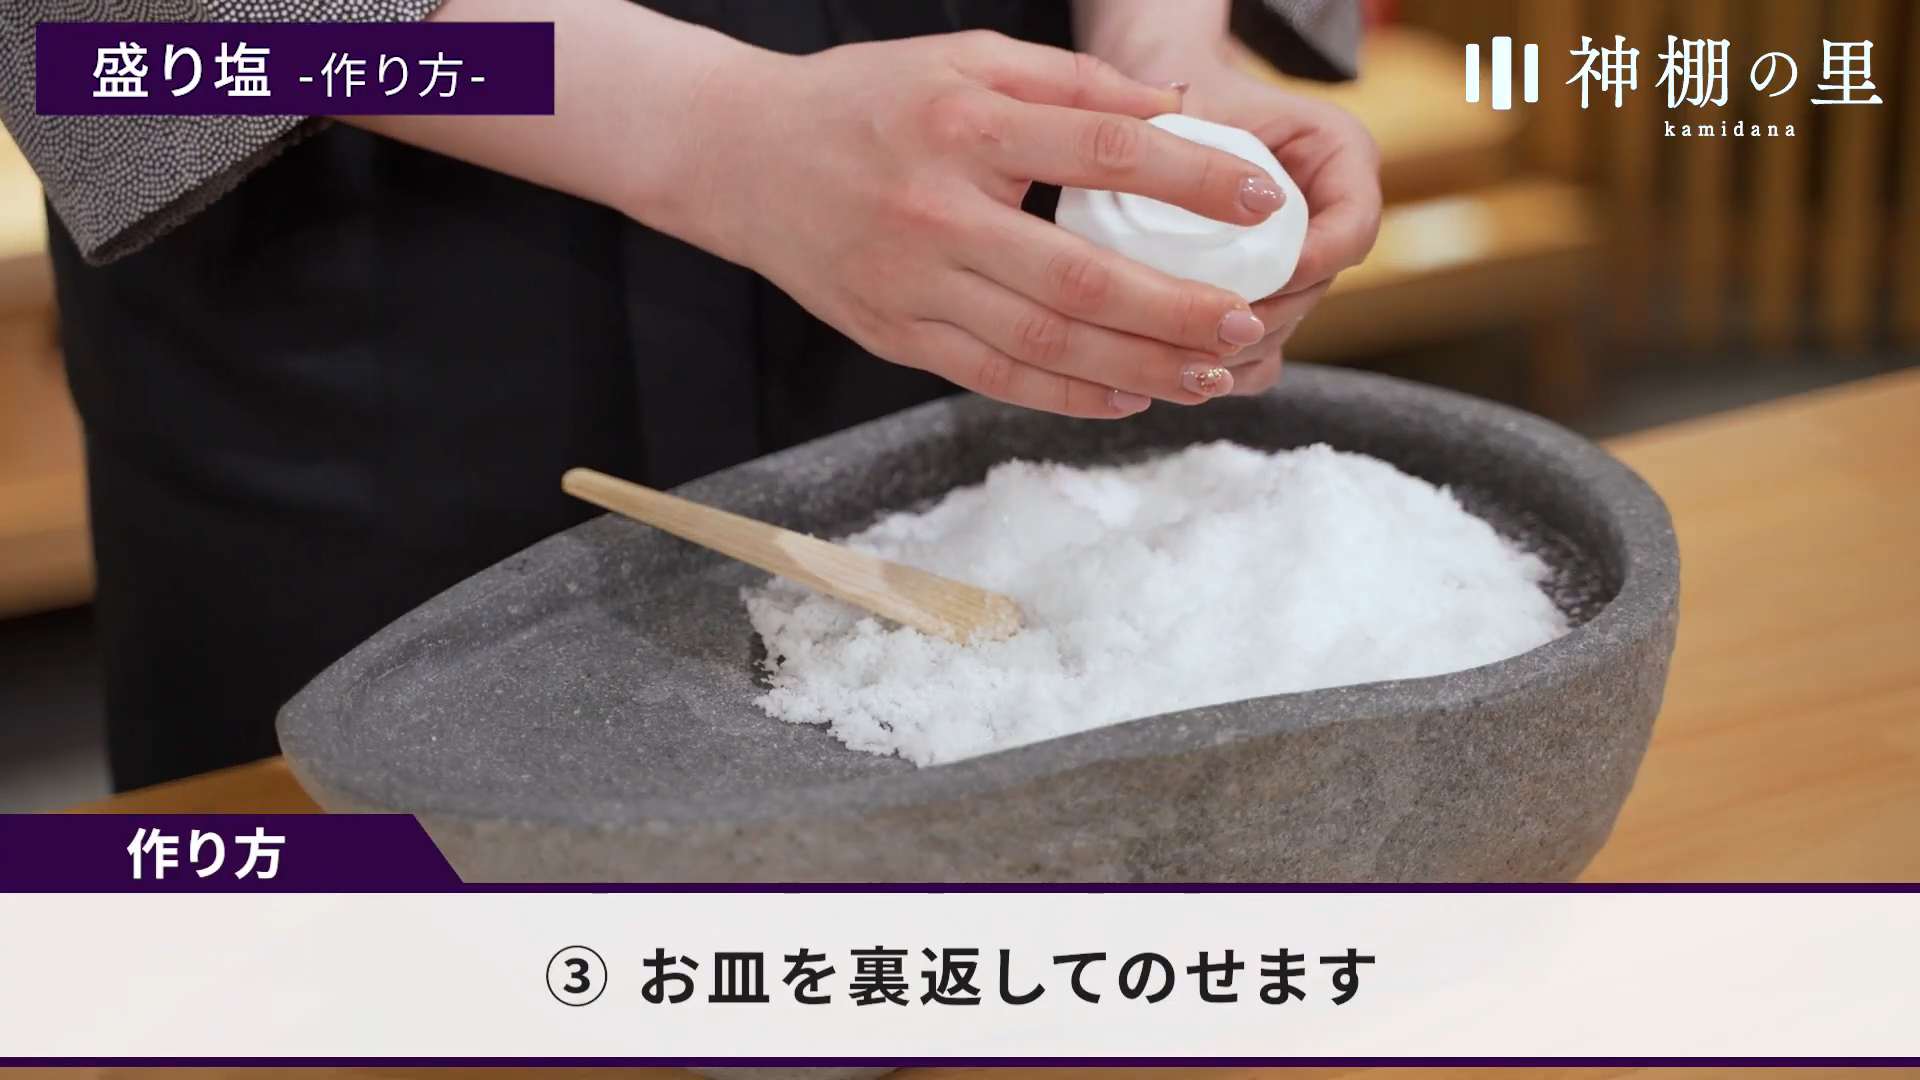 盛り塩について 盛り塩の作り方 自宅できれいに作る方法 神棚 神具の作り手 静岡木工